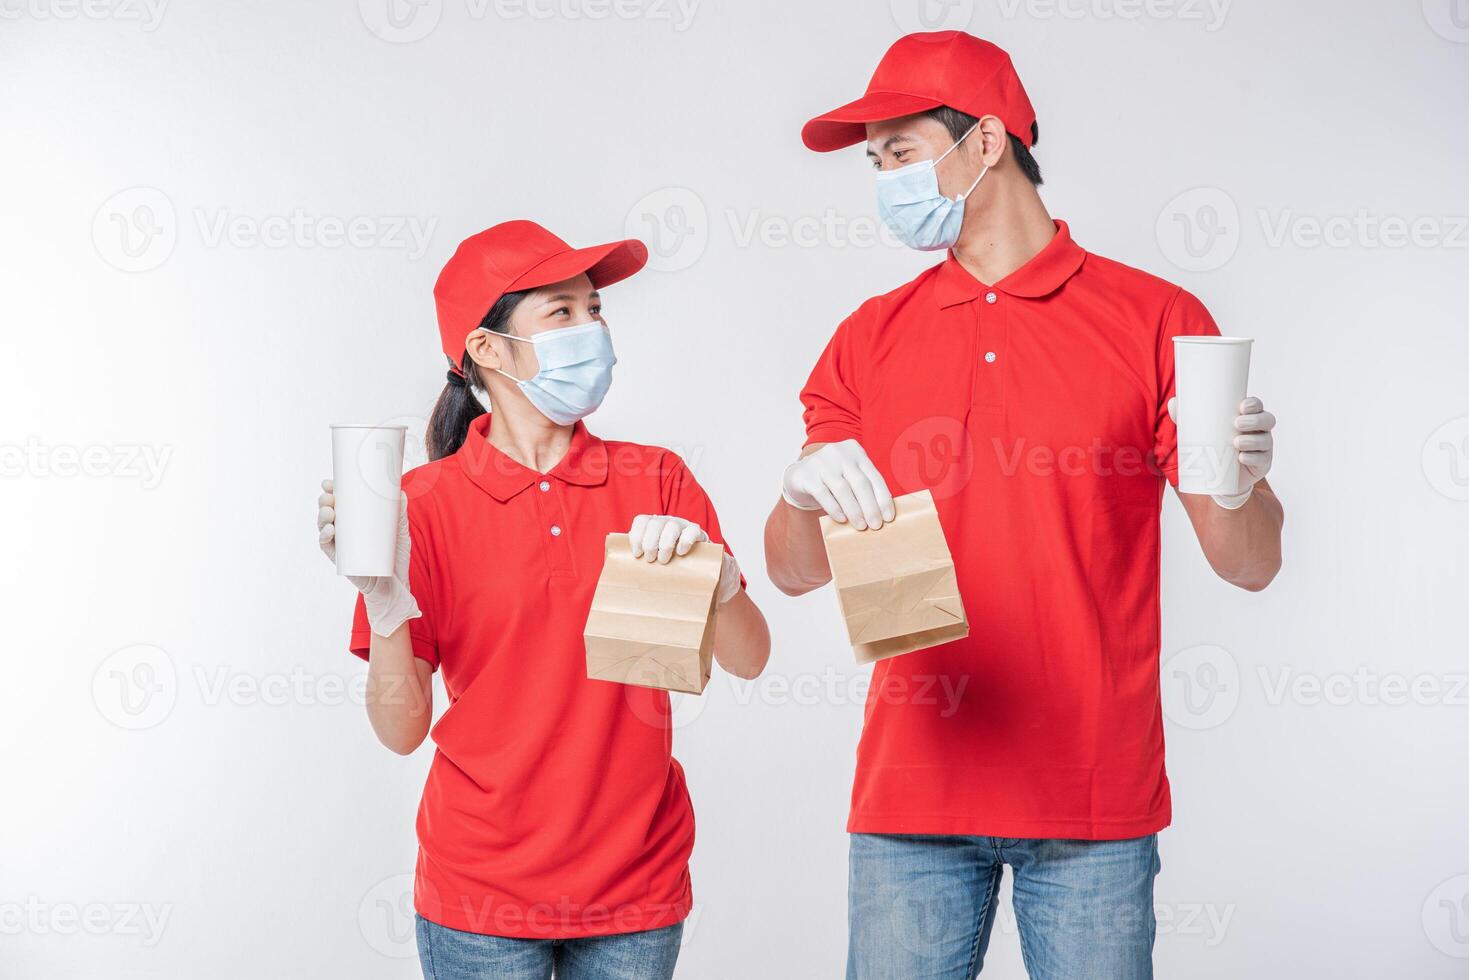 imagem de um jovem entregador feliz com gorro vermelho camiseta em branco uniforme máscara facial luvas em pé com pacote de papel artesanal marrom vazio isolado no estúdio de fundo cinza claro foto